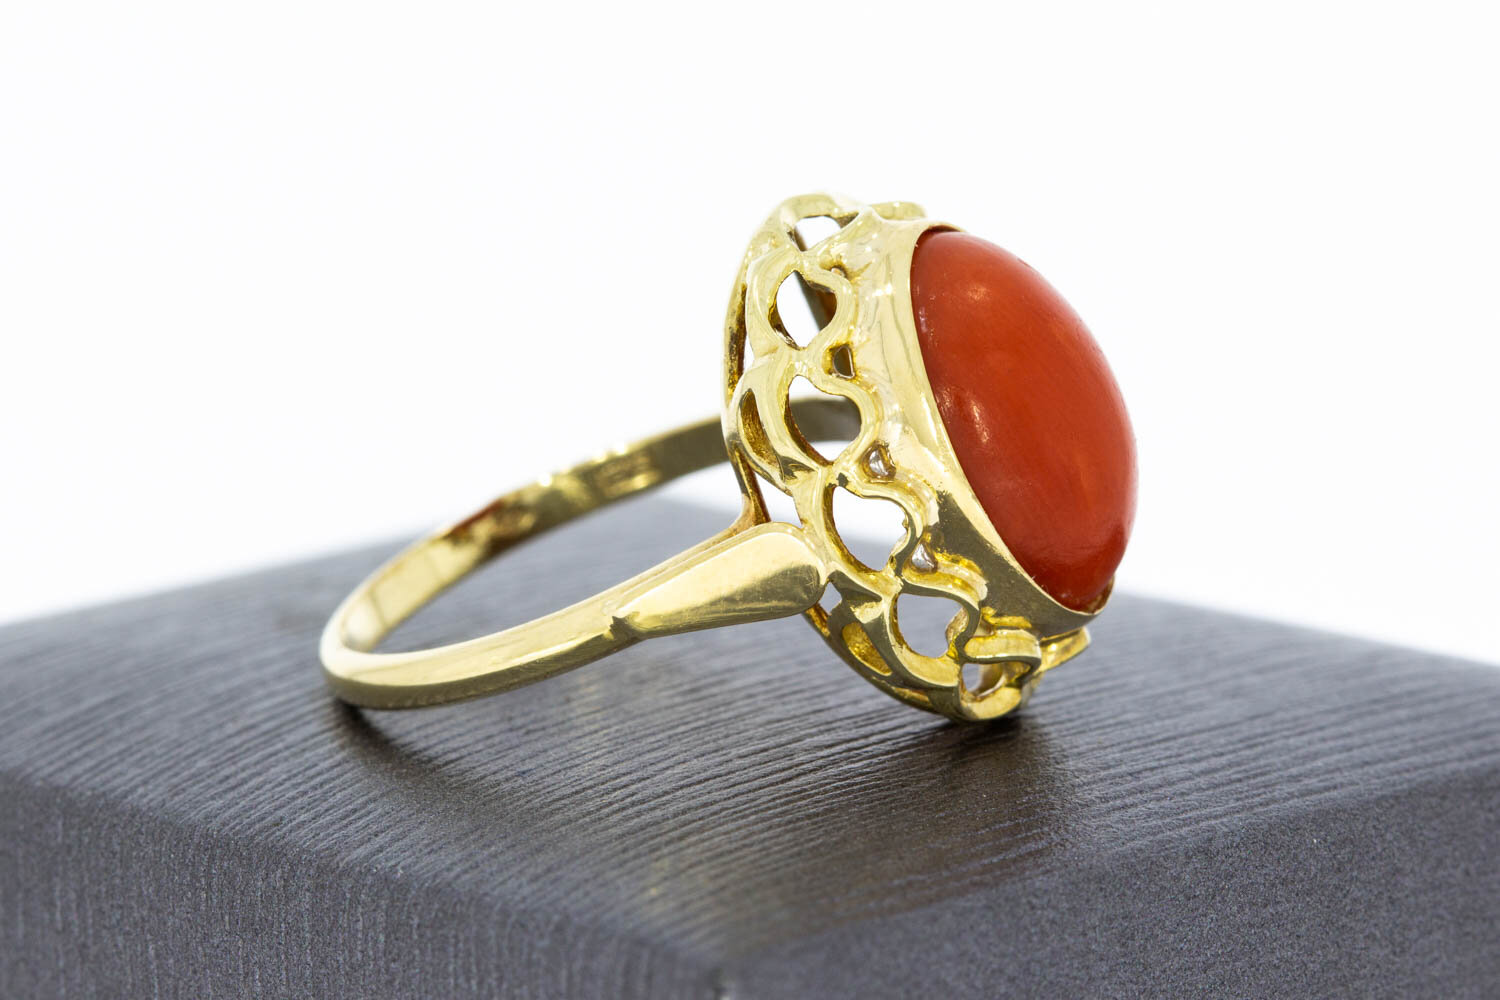 Vintage Ring aus 14 Karat Gold mit roter Koralle - 18,3 mm